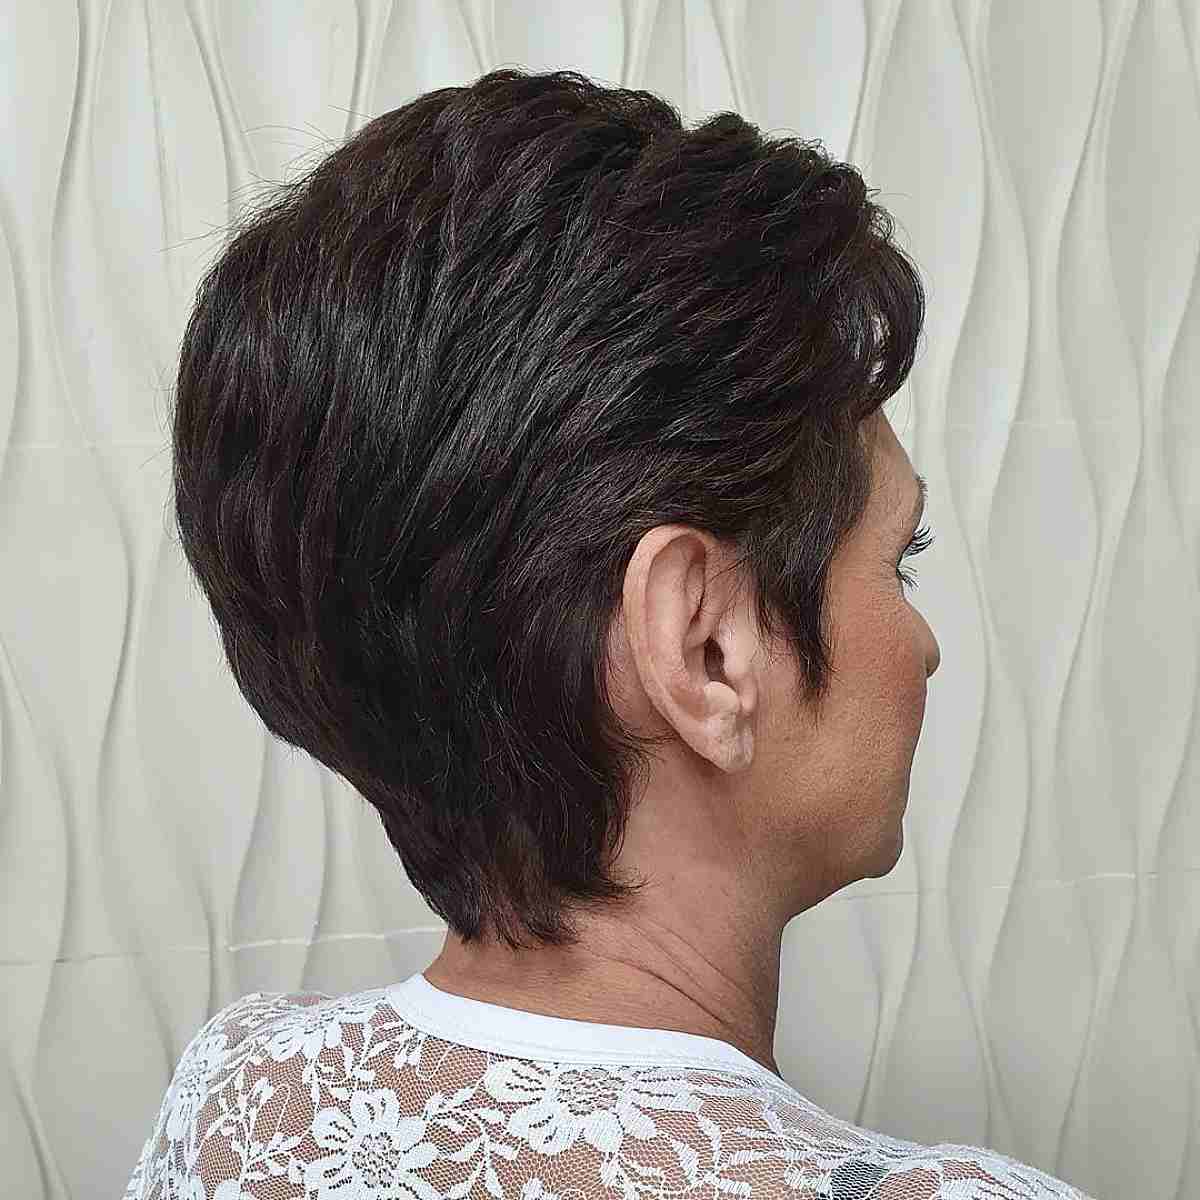 Corte curto pixie no cabelo castanho escuro para mulheres mais velhas